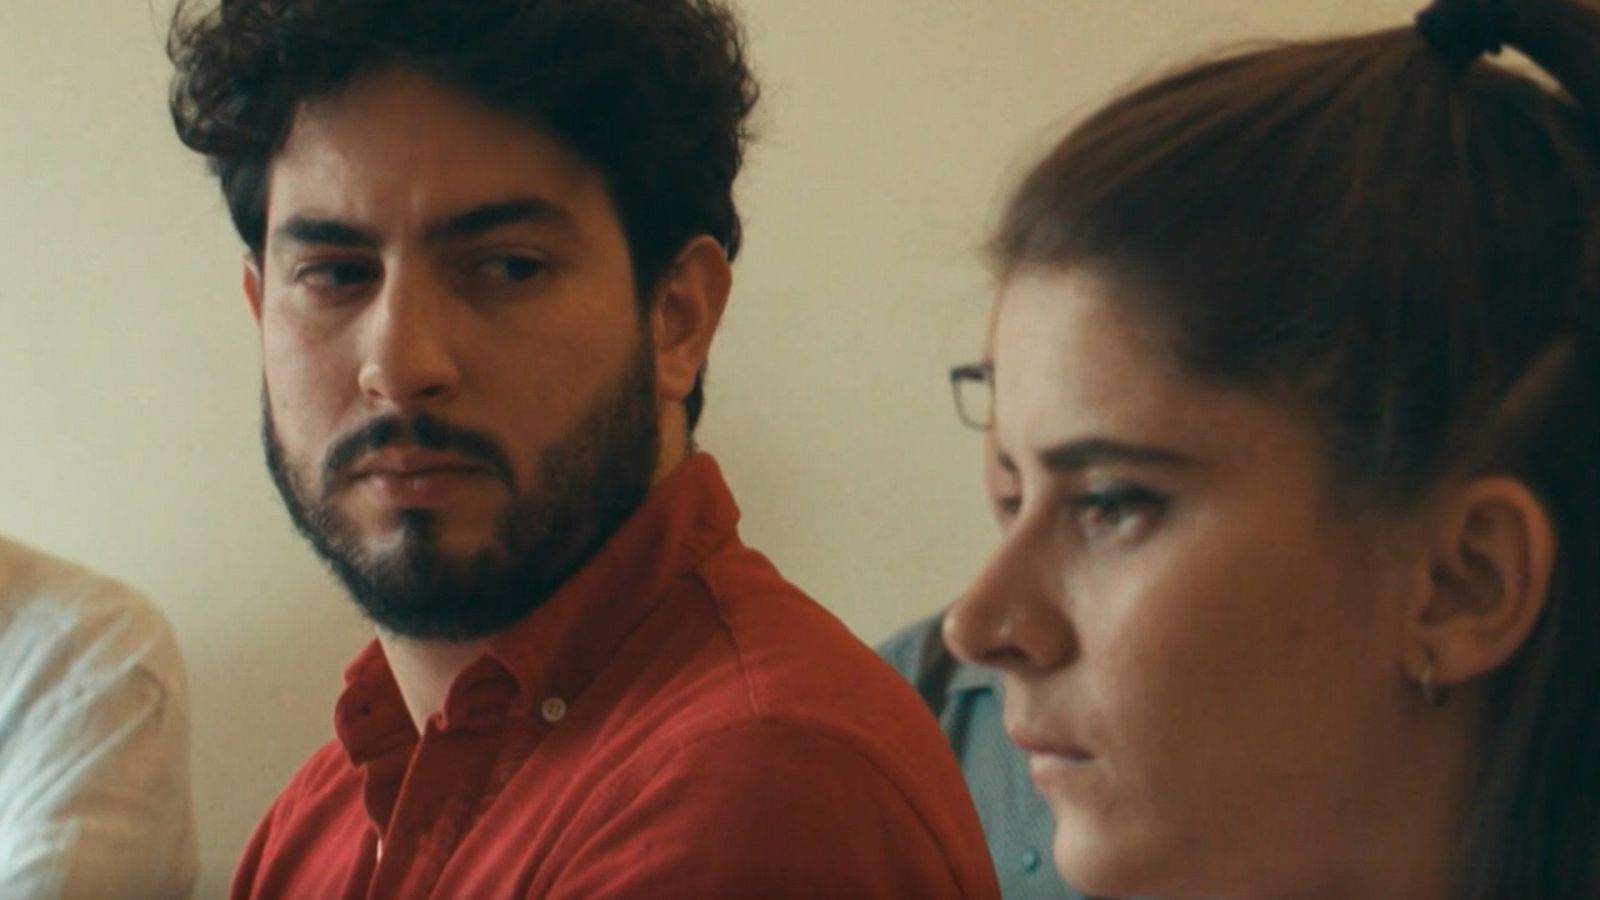 Novela vaga (corto): Cine español online, en Somos Cine | RTVE.es